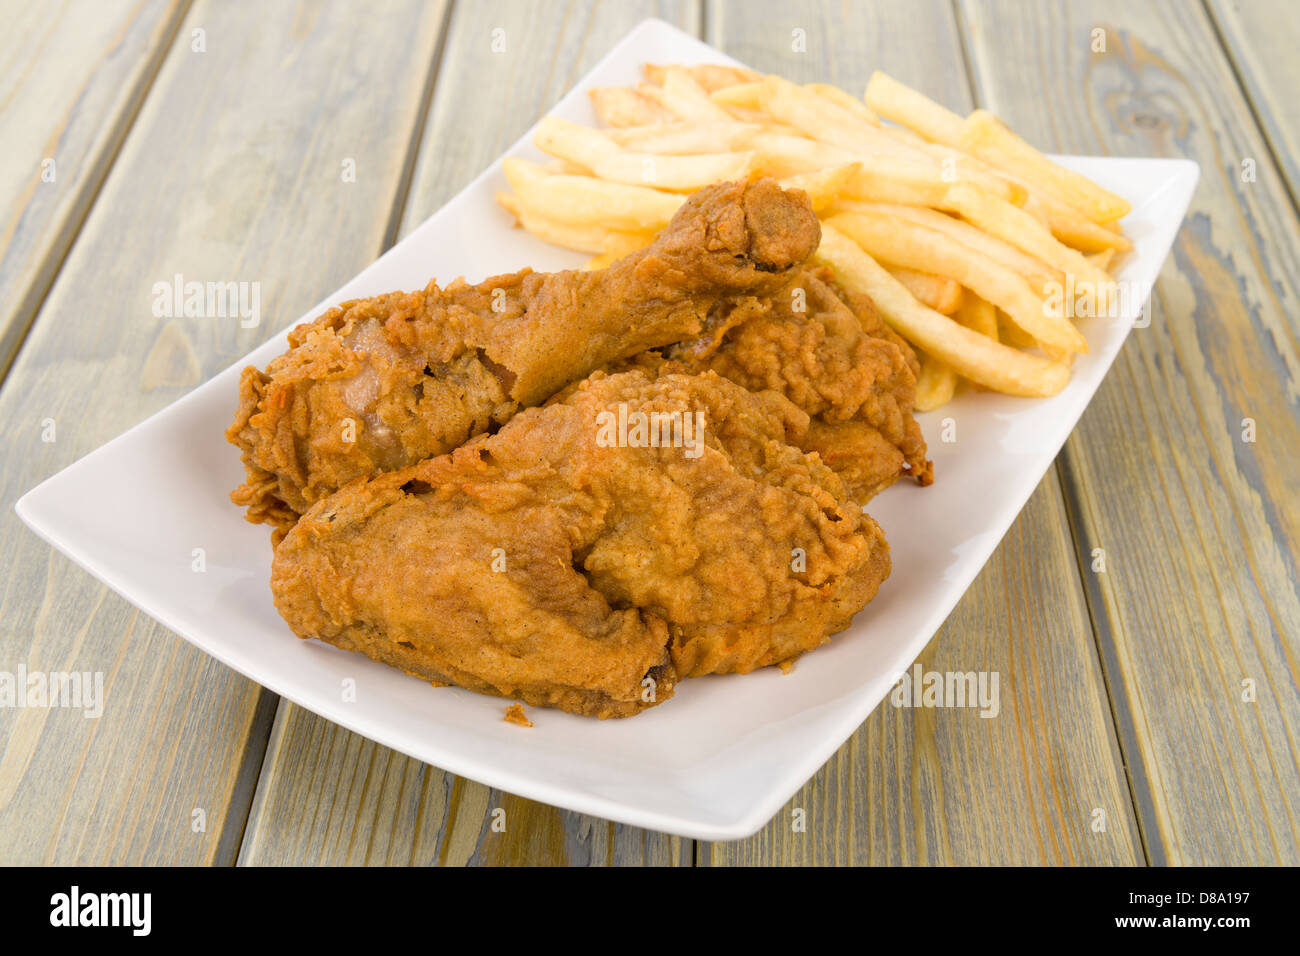 Fried Chicken & Chips - Hähnchenteile auf den Knochen in würziger Mehl überzogen und frittiert mit Pommes frites serviert. Stockfoto